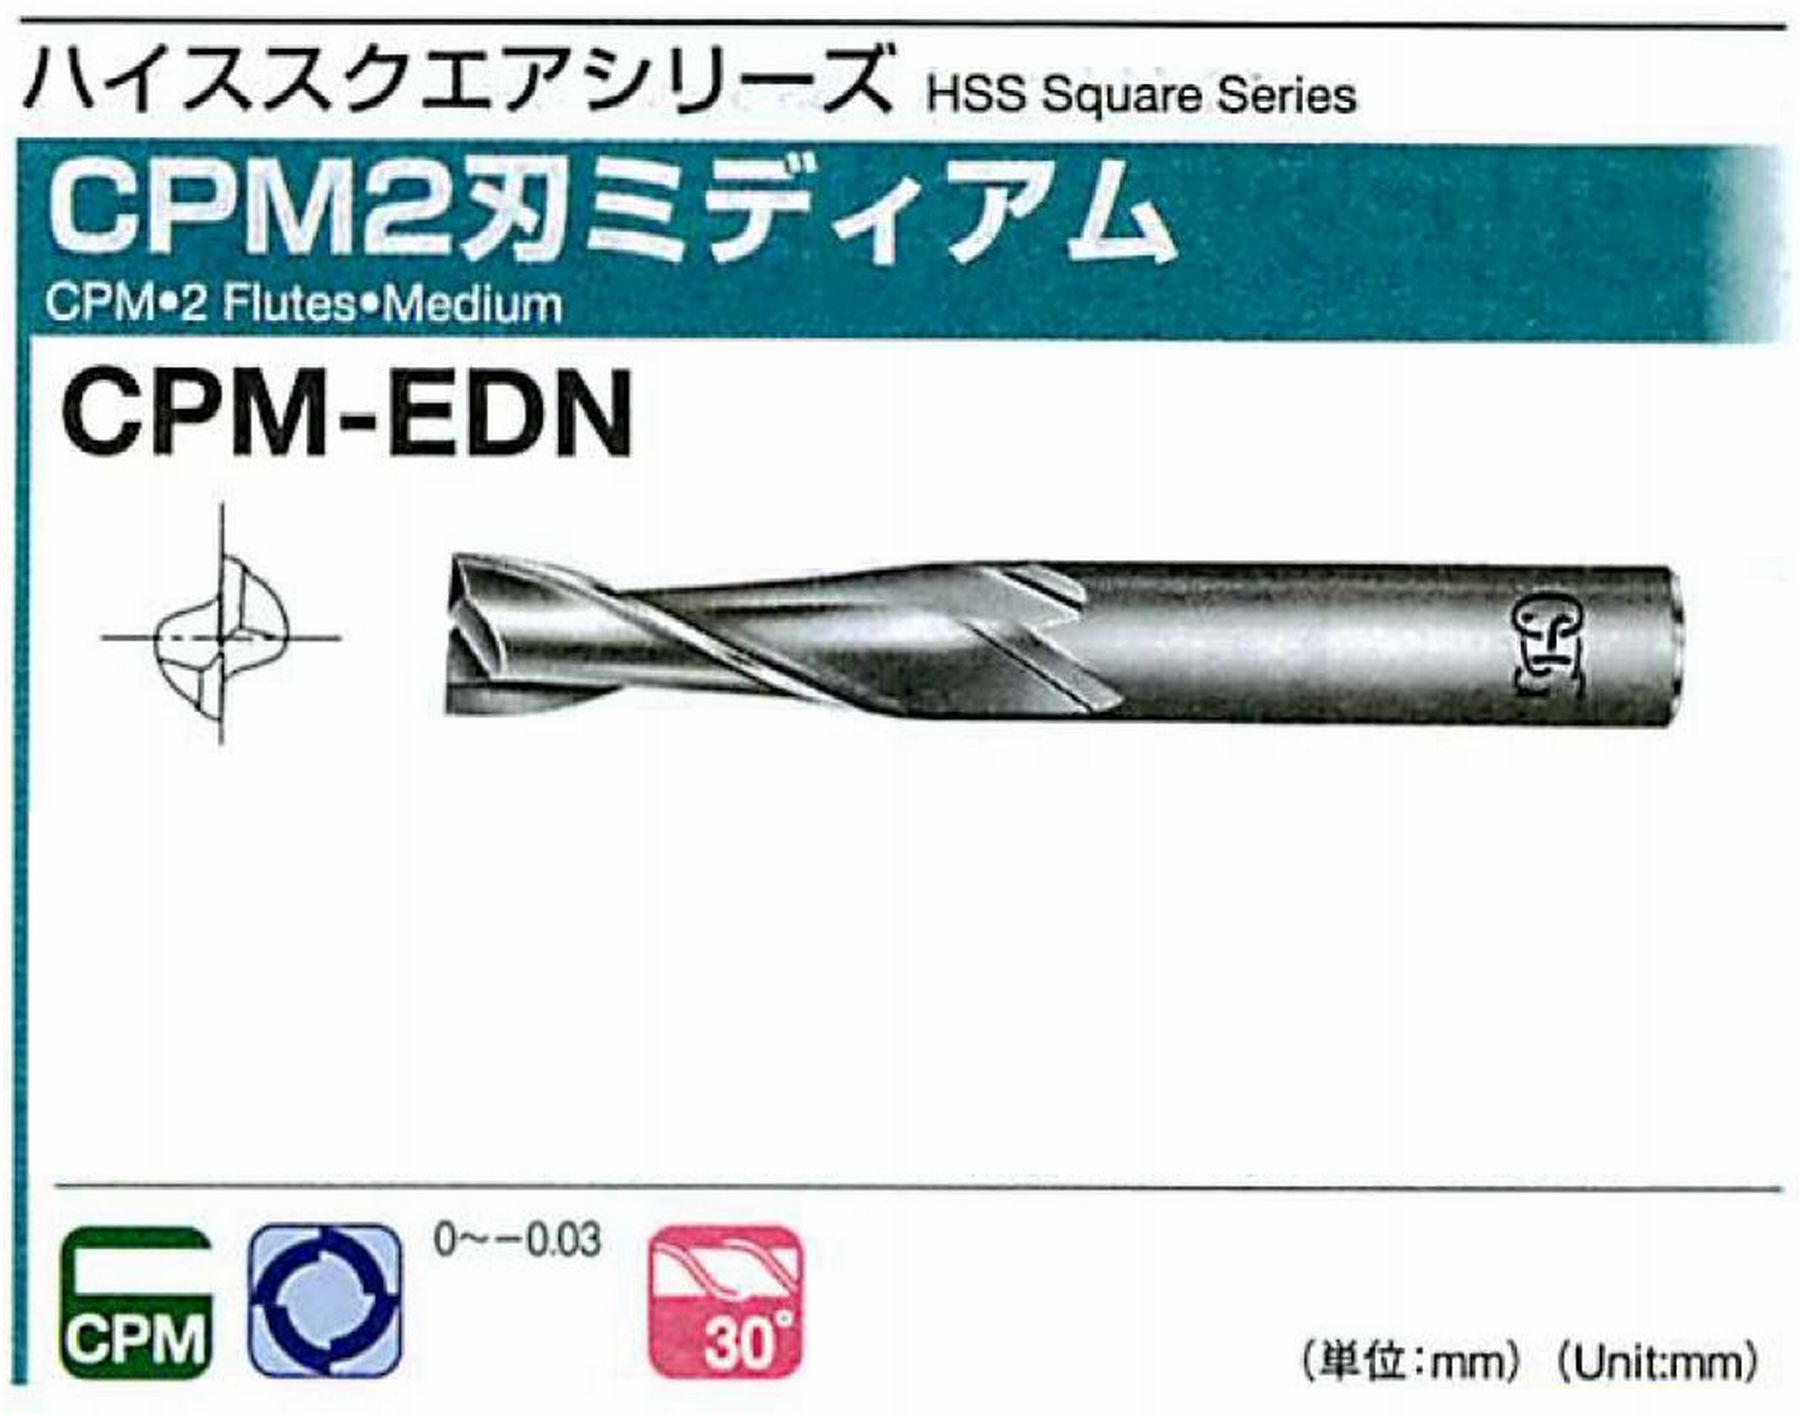 オーエスジー/OSG CPM2刃 ミディアム CPM-EDN 外径3 全長50 刃長10 シャンク径6mm